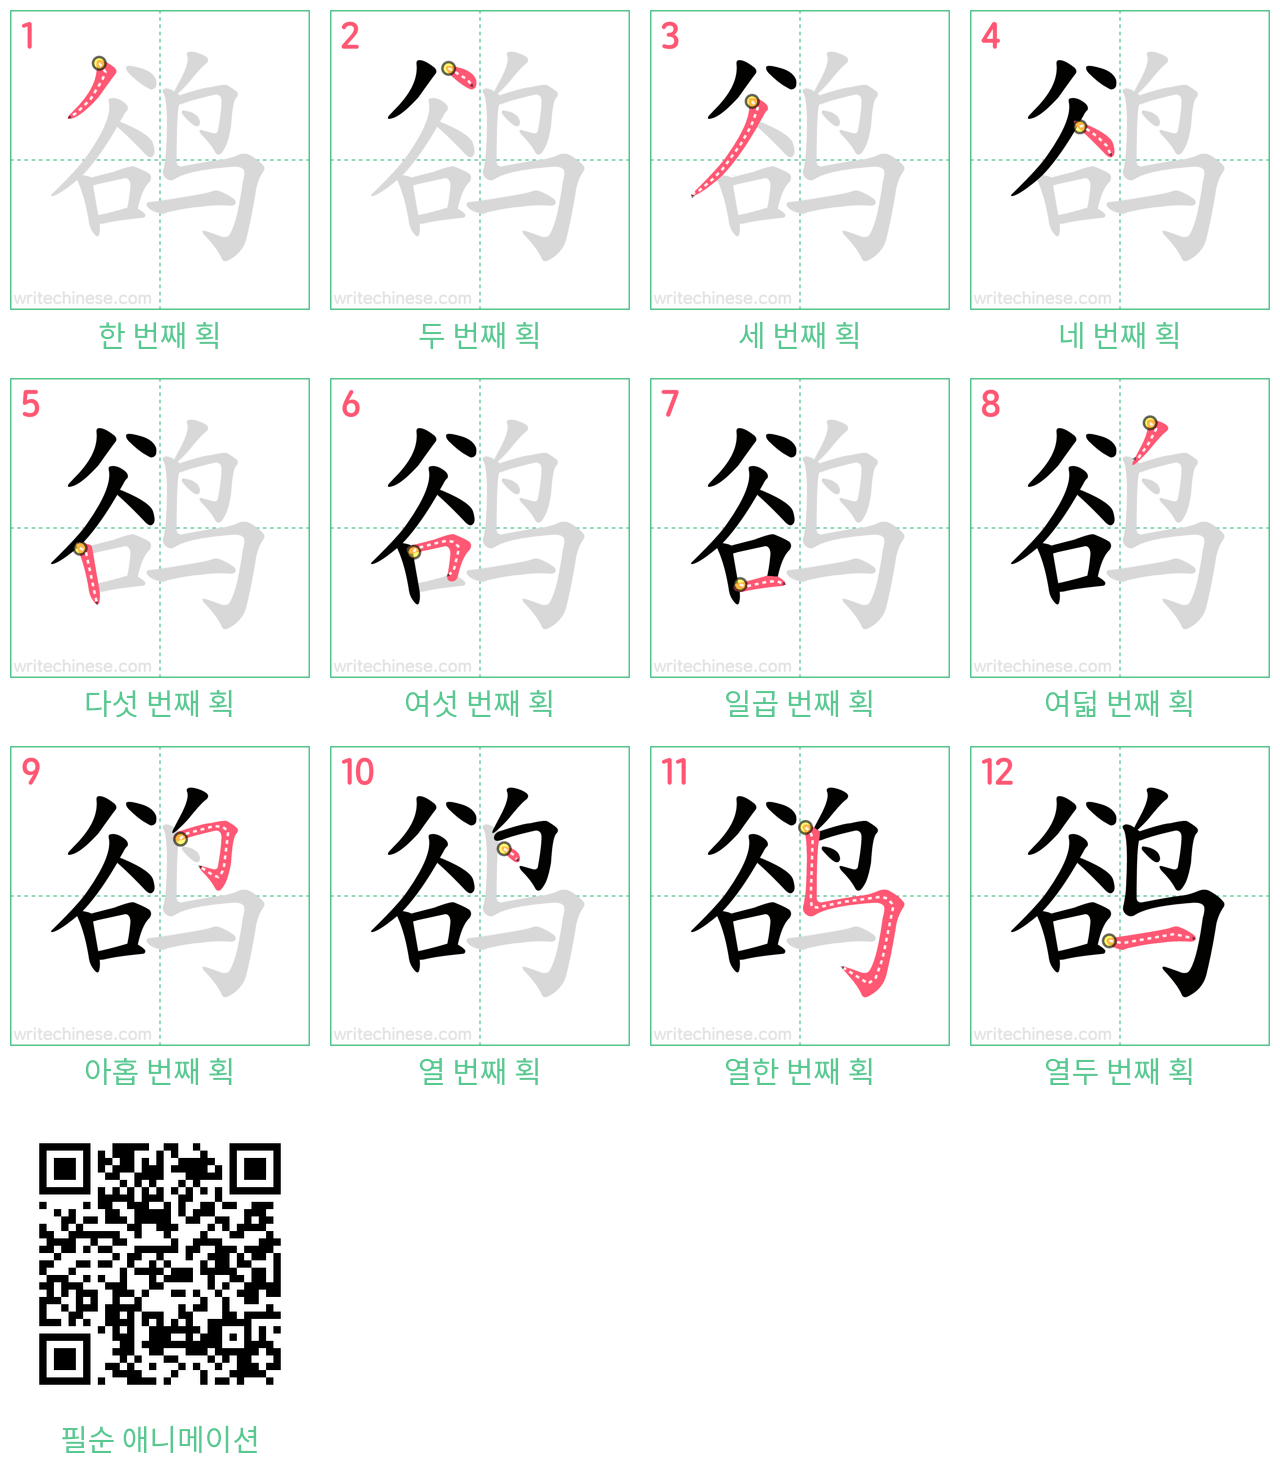 鹆 step-by-step stroke order diagrams